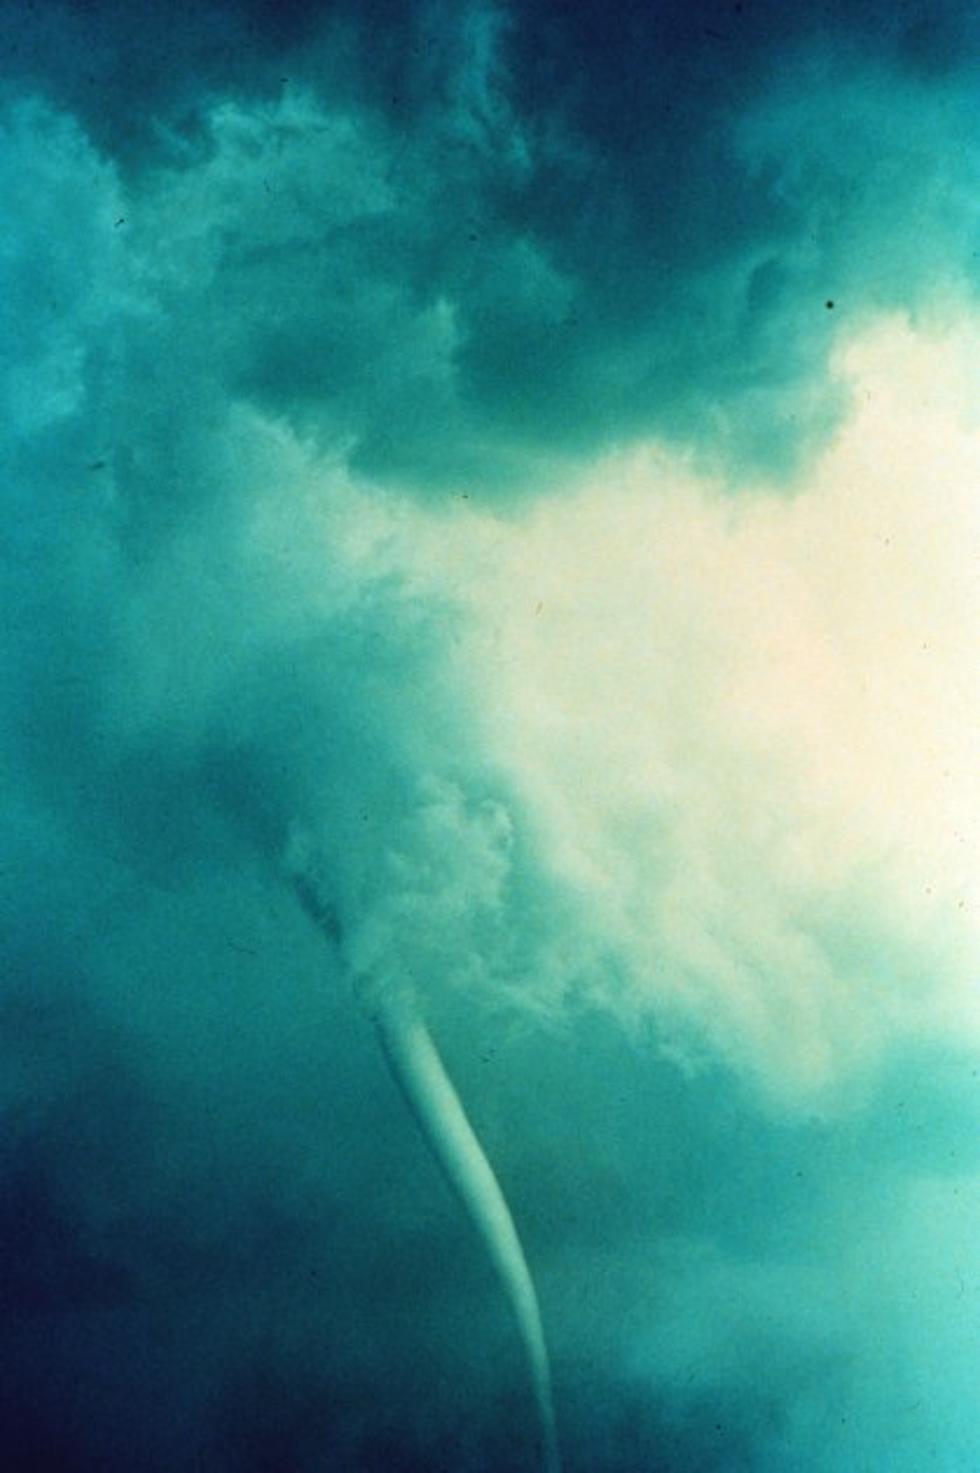 Tornado Myths Busted